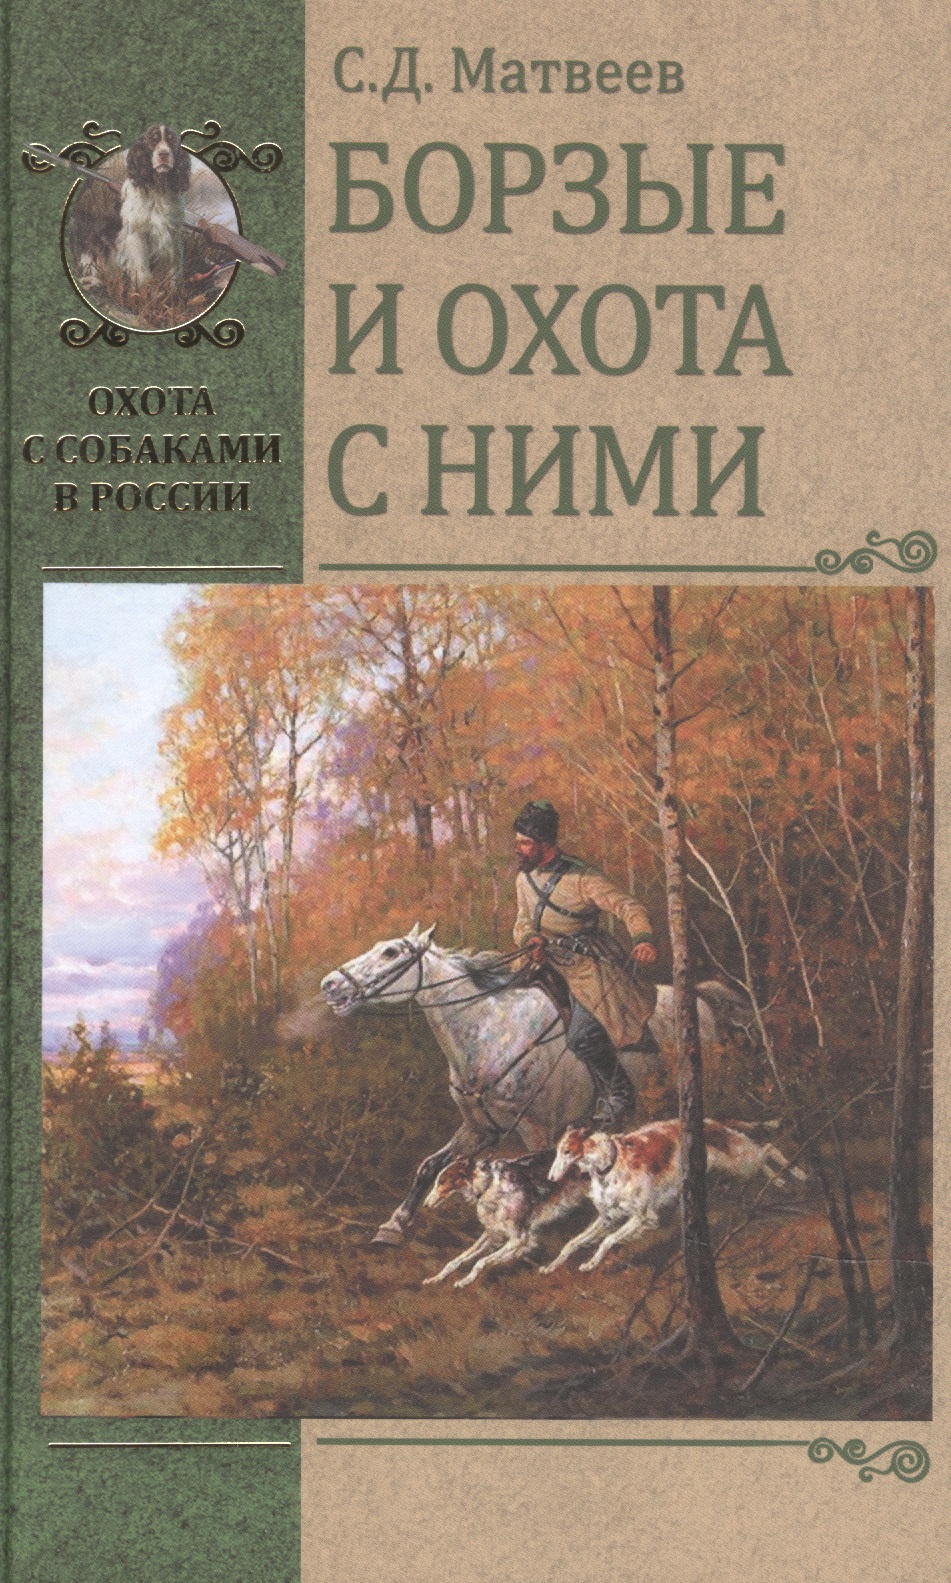 Матвеев Сергей Дмитриевич Борзые и охота с ними гибет л лайки и охота с ними